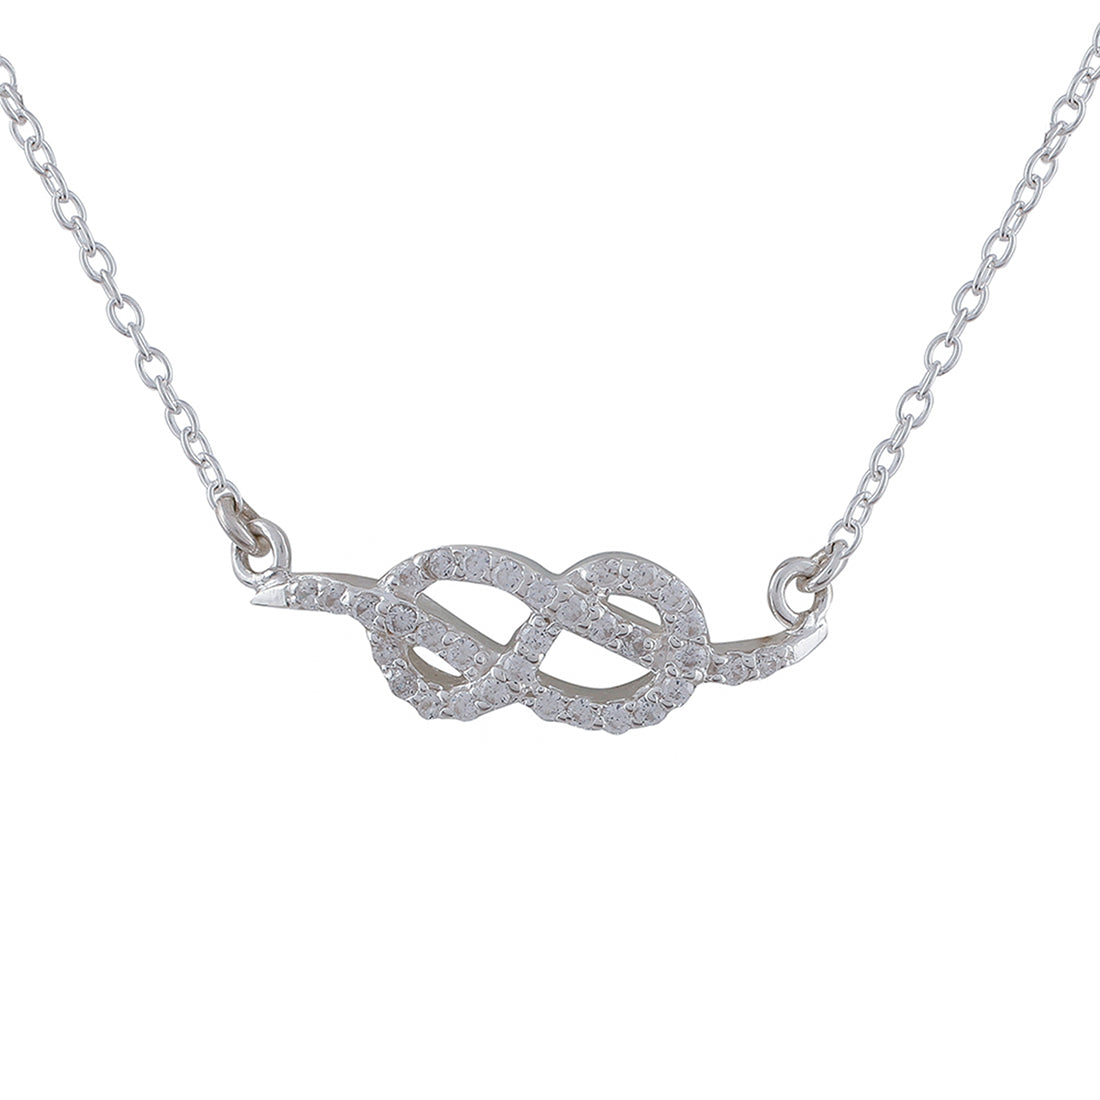 925 Sterling Silver CZ Gem Studded Infinity Necklace